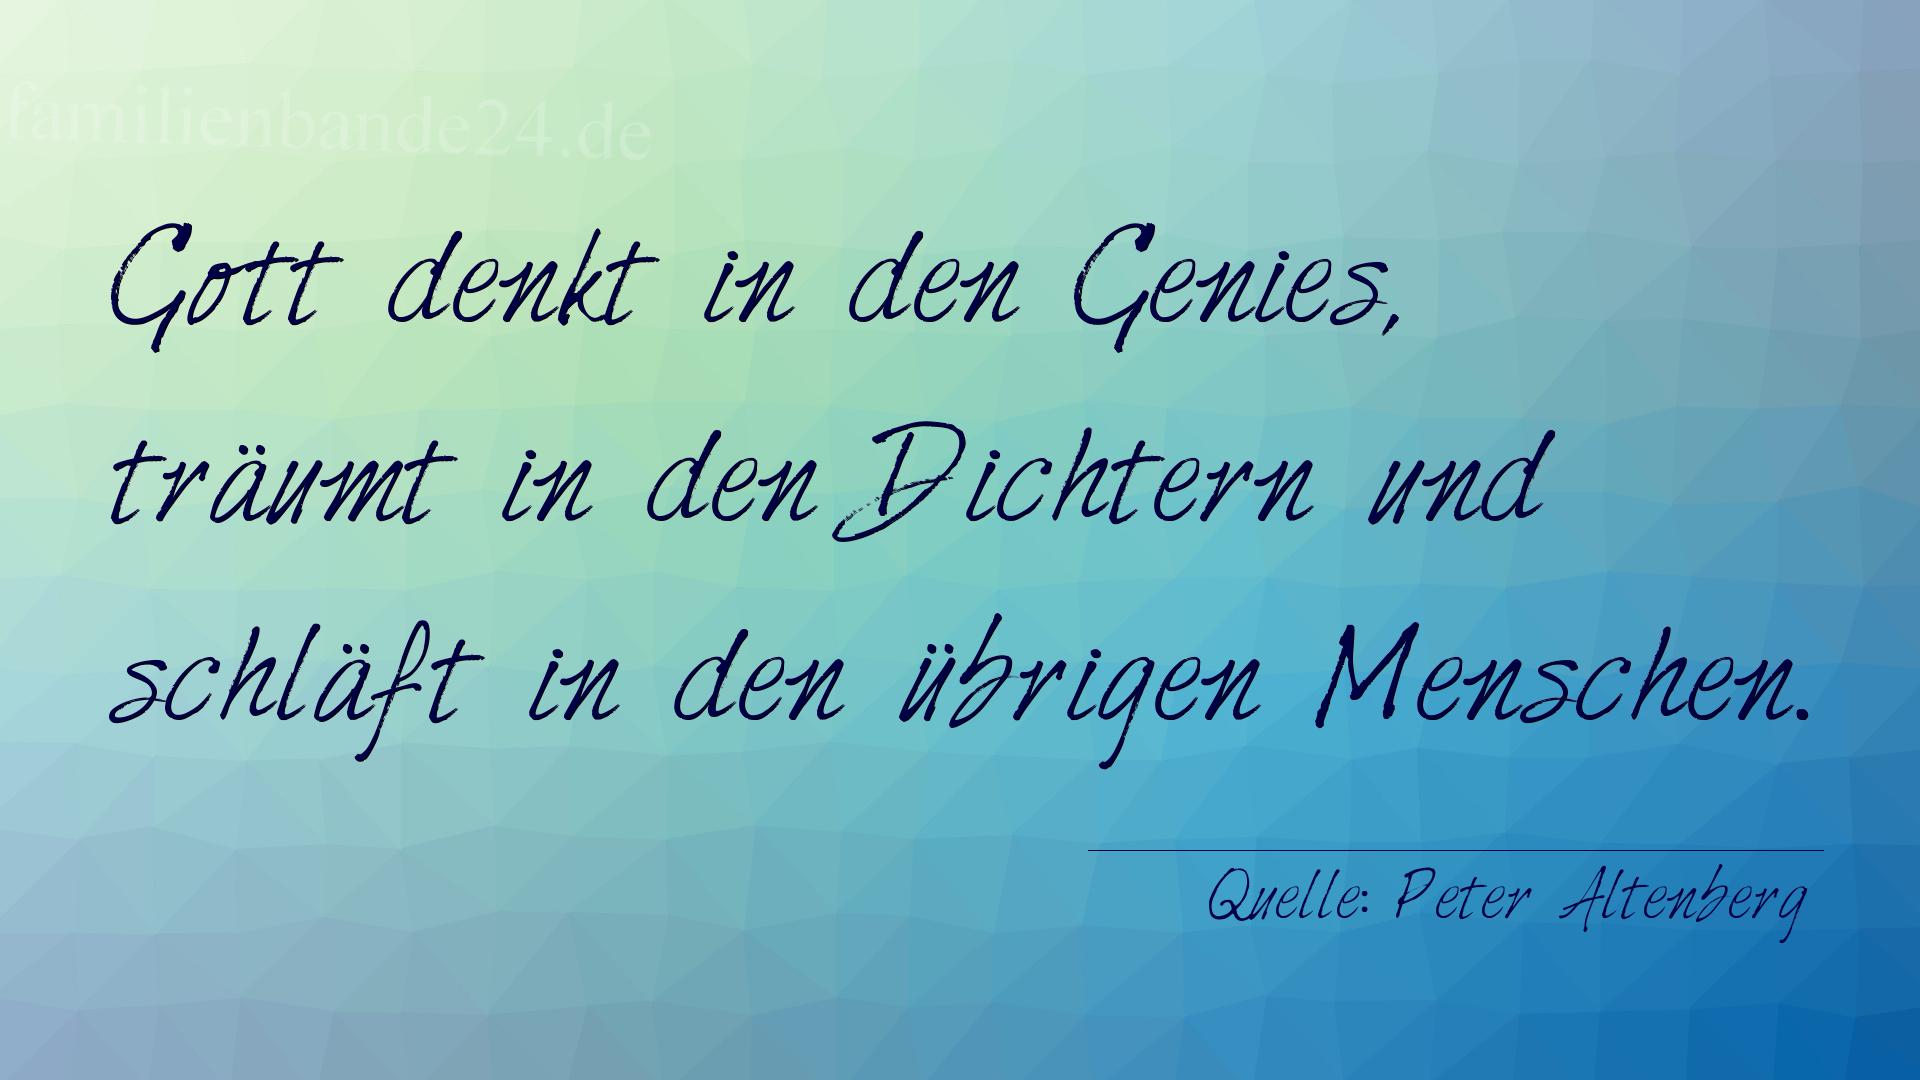 Aphorismus Nummer 1195 (von Peter Altenberg): "Gott denkt in den Genies, träumt in den Dichtern und sch [...]